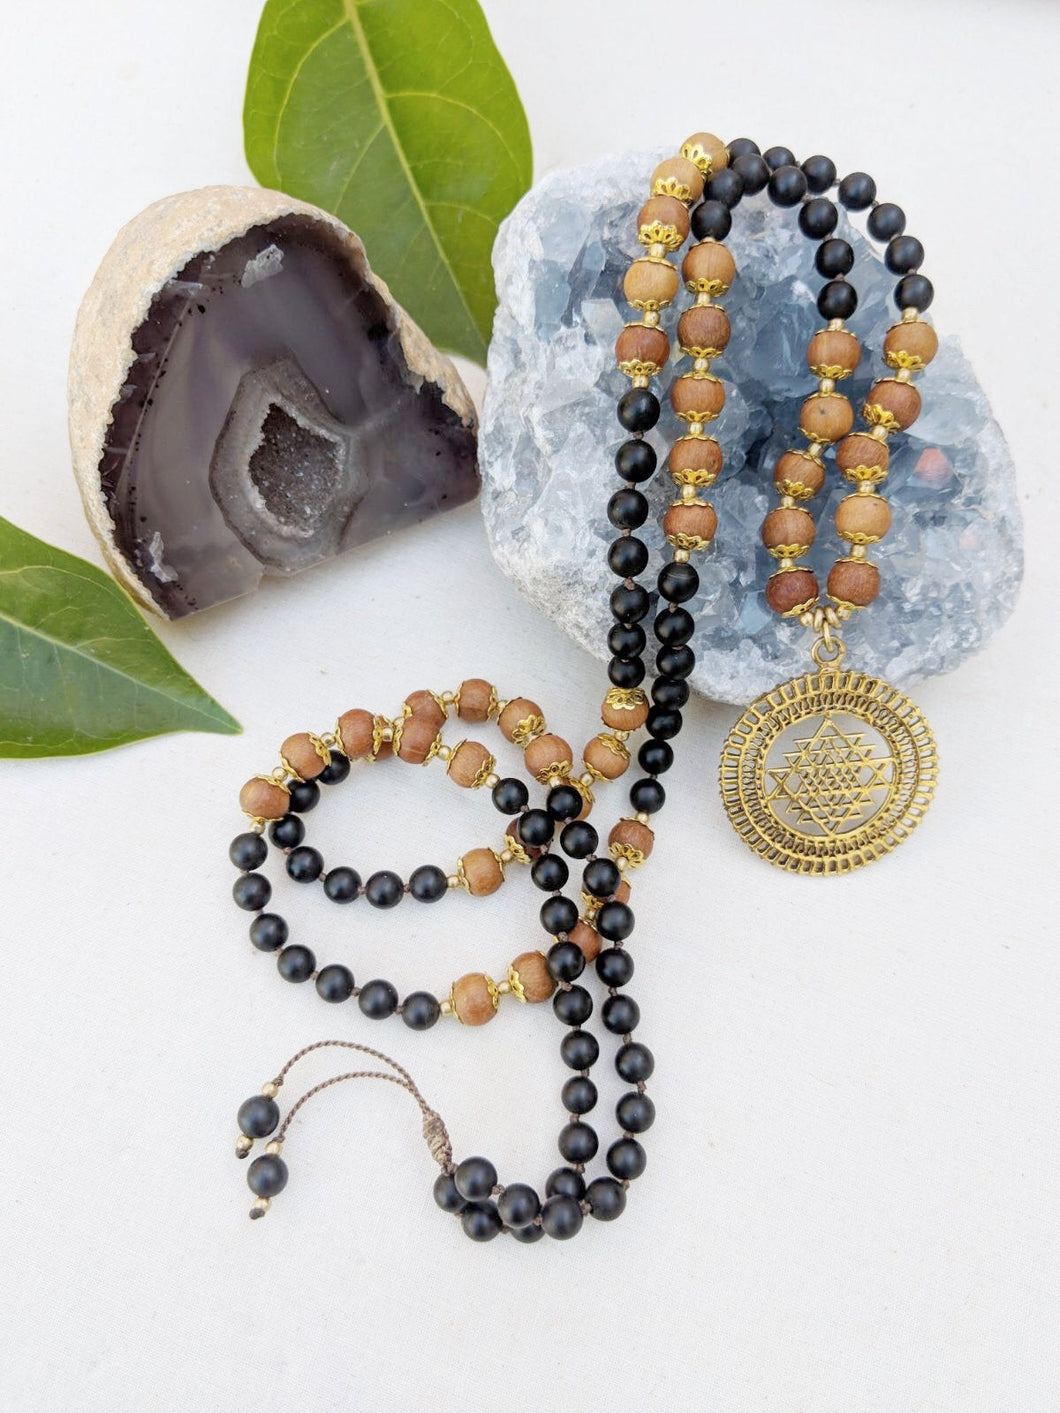 Yoga Mala | Black Onyx Sandalwood Sri Yantra Pendant Necklace | 108 Beads